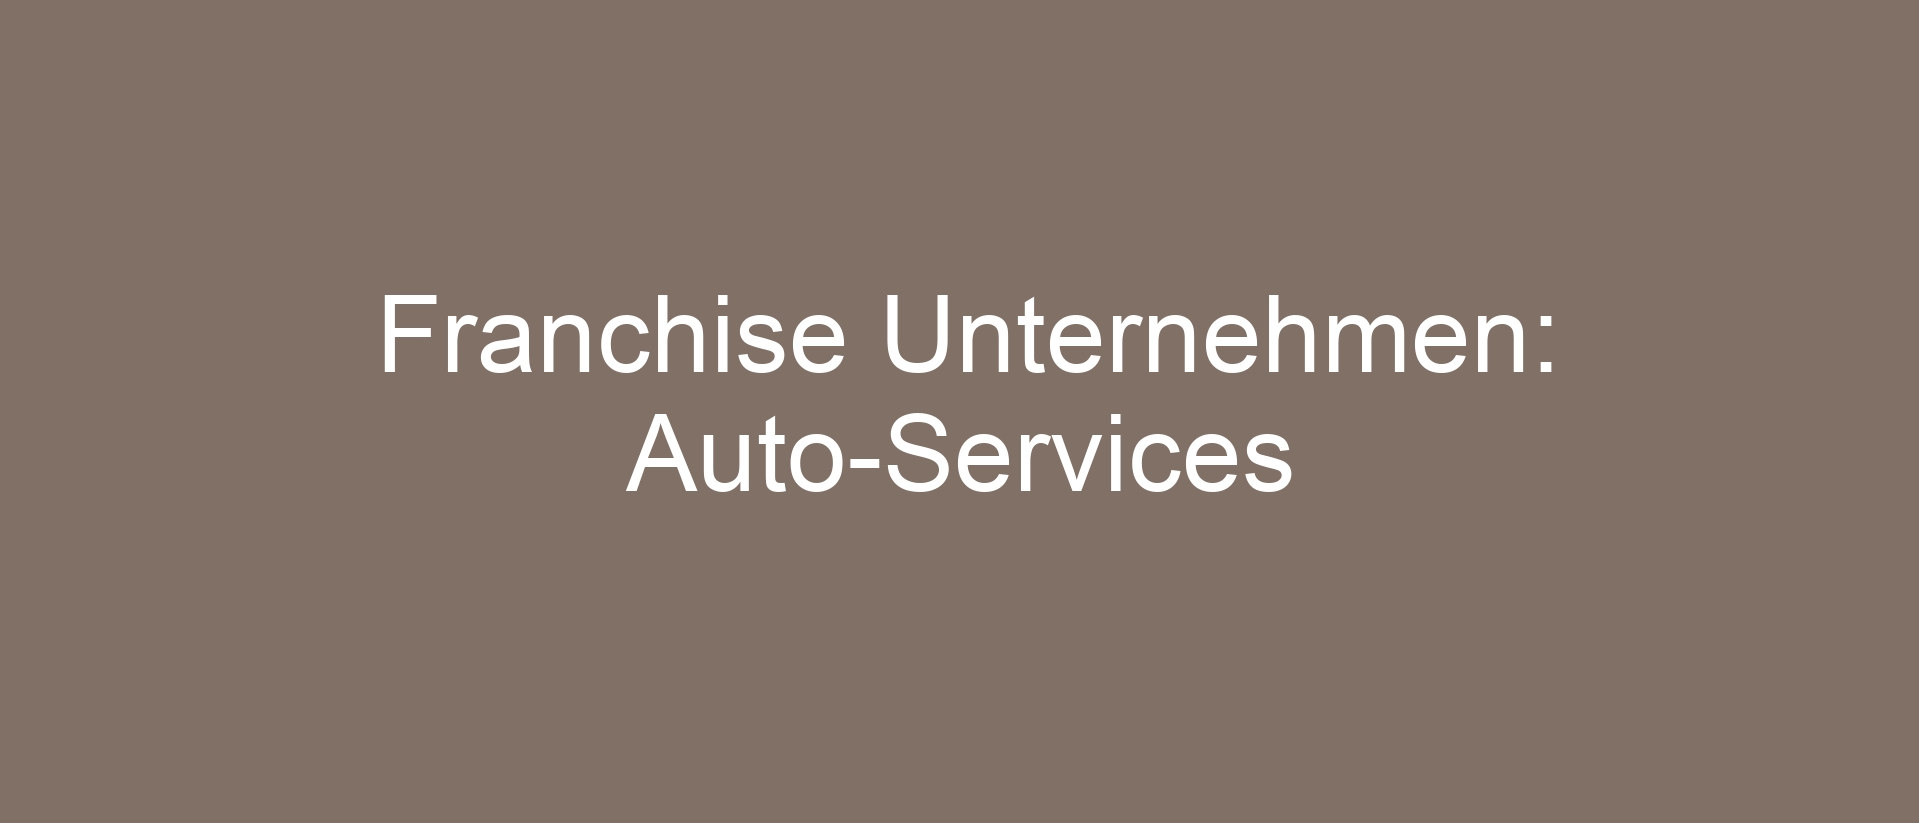 Franchise Unternehmen: Auto-Services